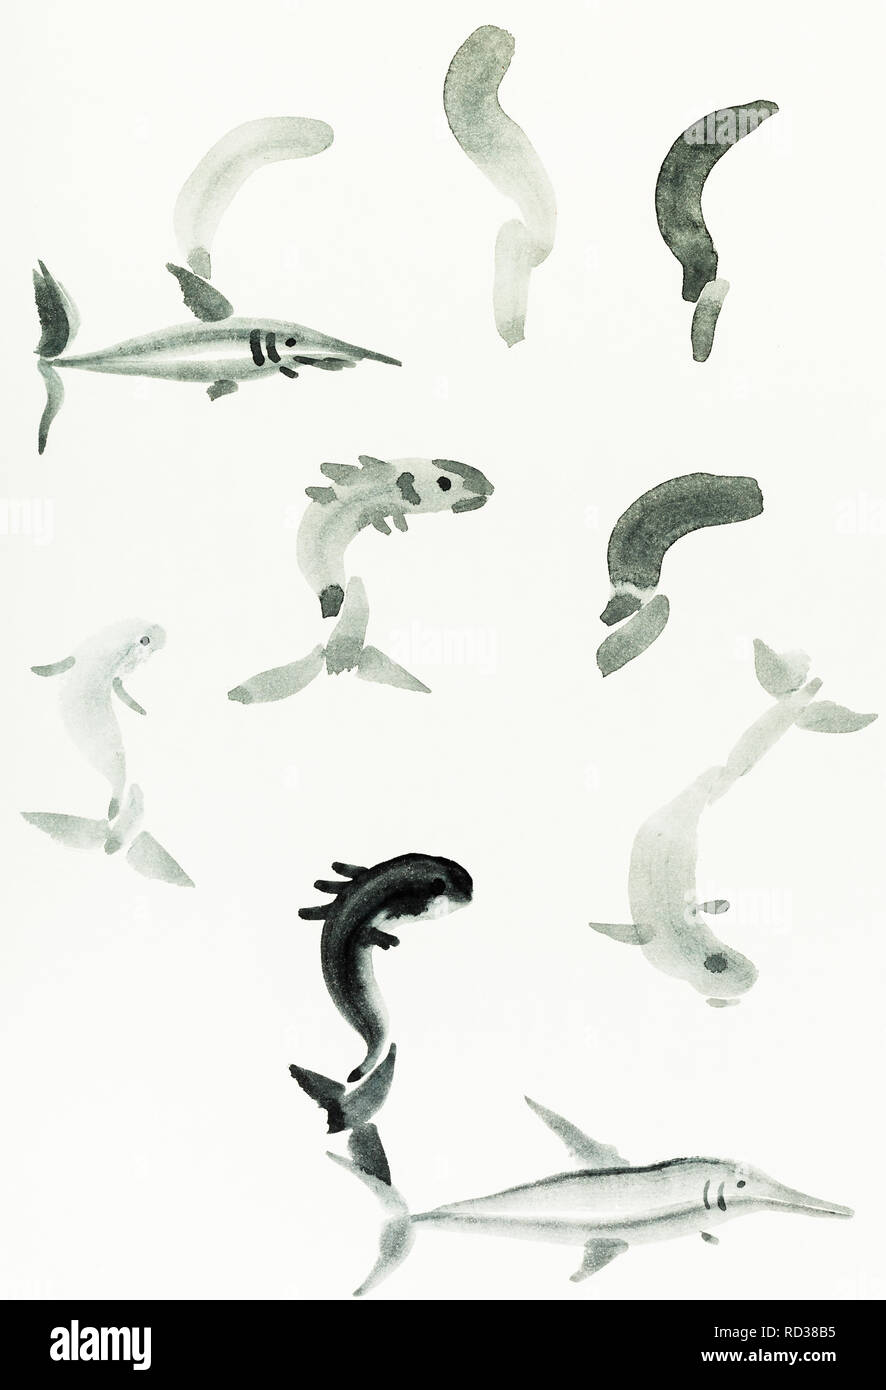 La formation en dessin sumi-e (suibokuga) with style - Esquisses de divers poissons sont dessinés à la main sur papier crème Banque D'Images